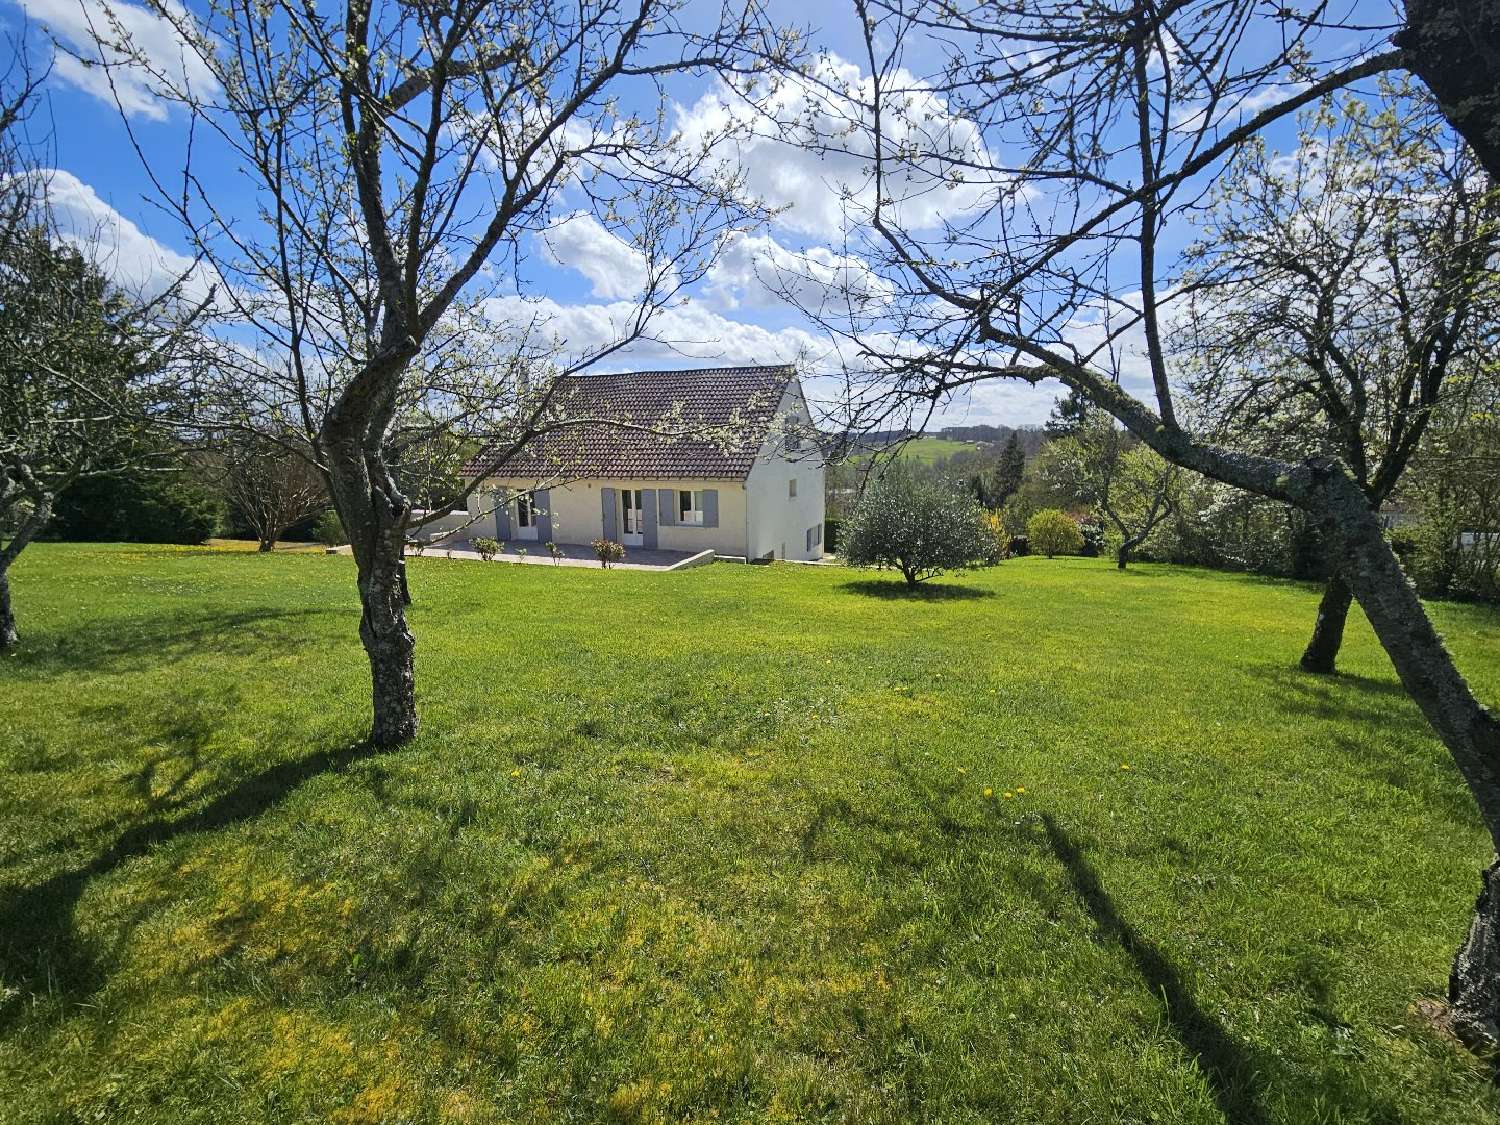  à vendre maison Atur Dordogne 1